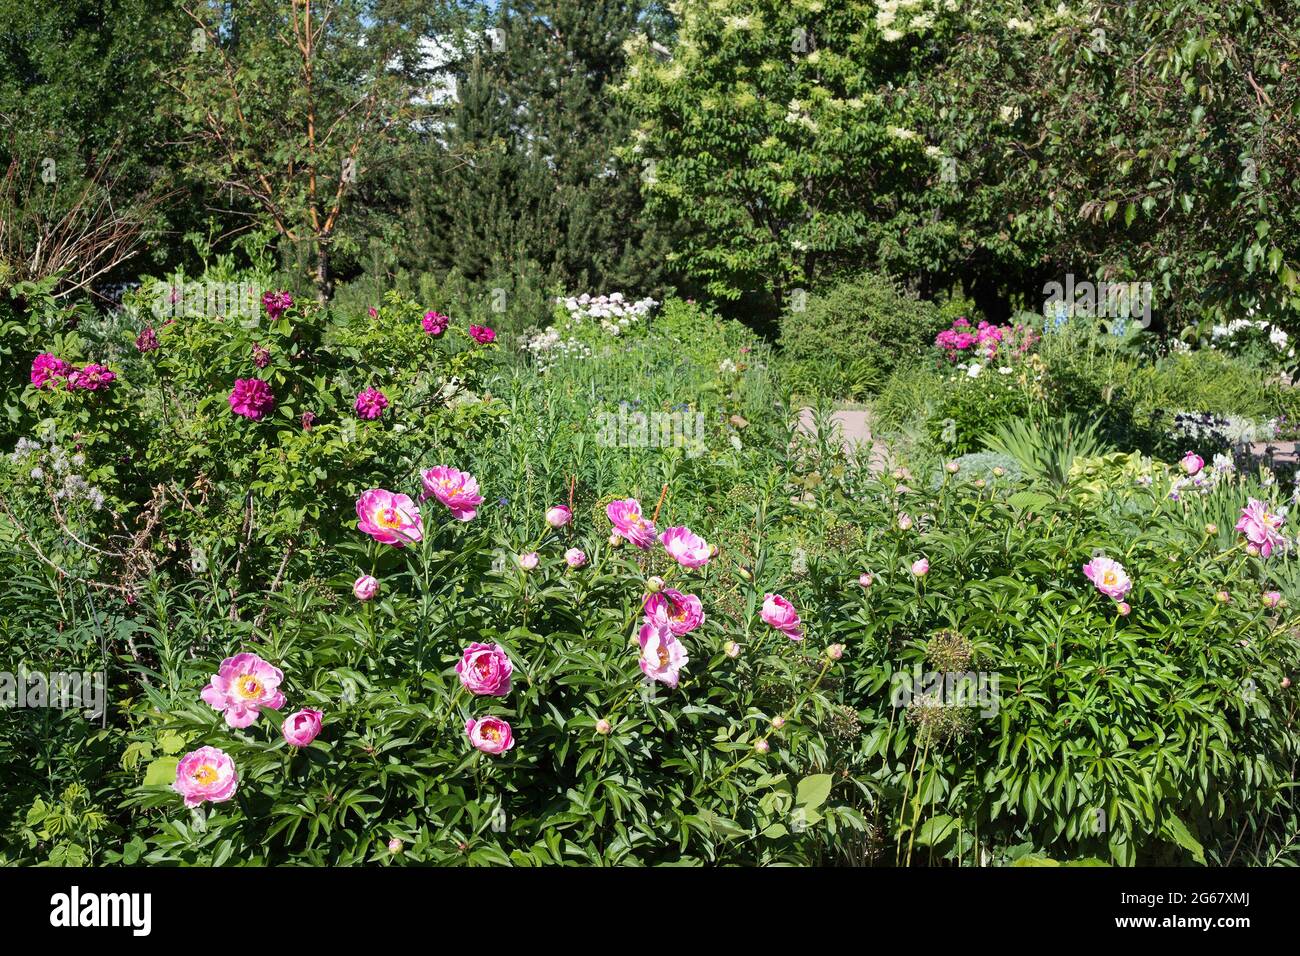 El Jardín Fragante del CNIB para aquellos con visión deficiente incluye plantas con fragancias y texturas distintas, peonías y rosas en flor Foto de stock